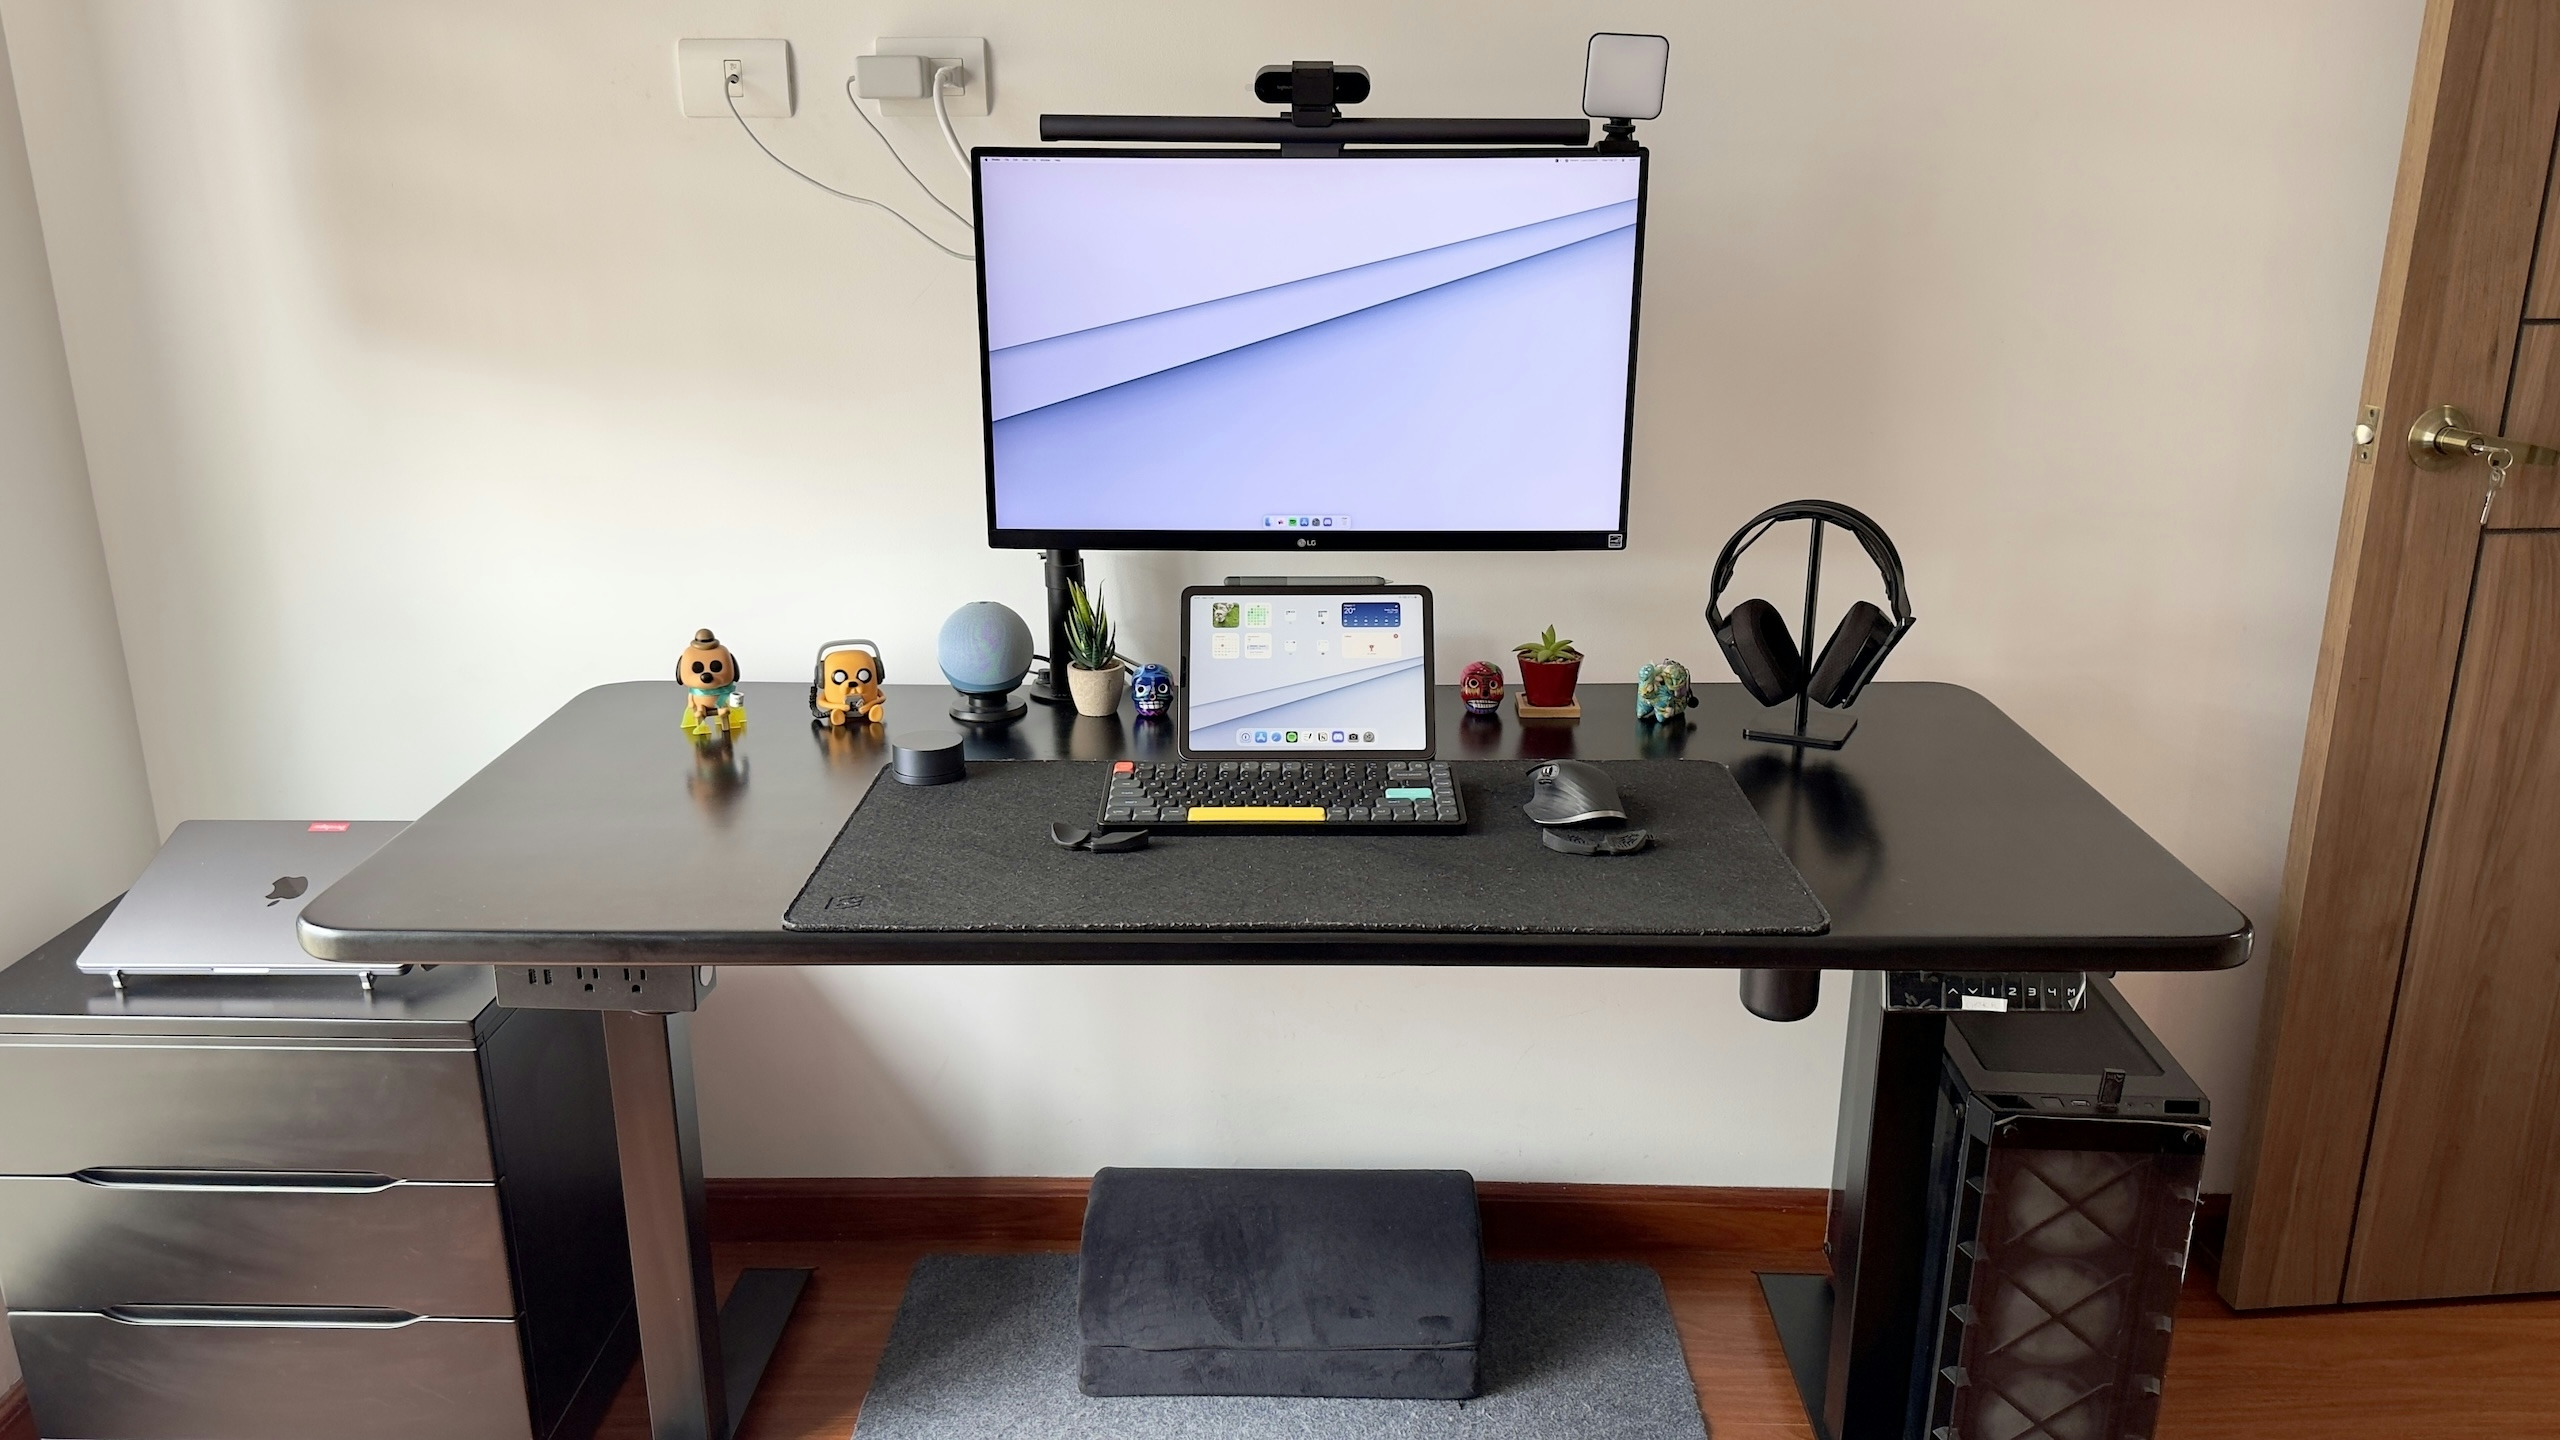 Jahir's desk setup in early 2023